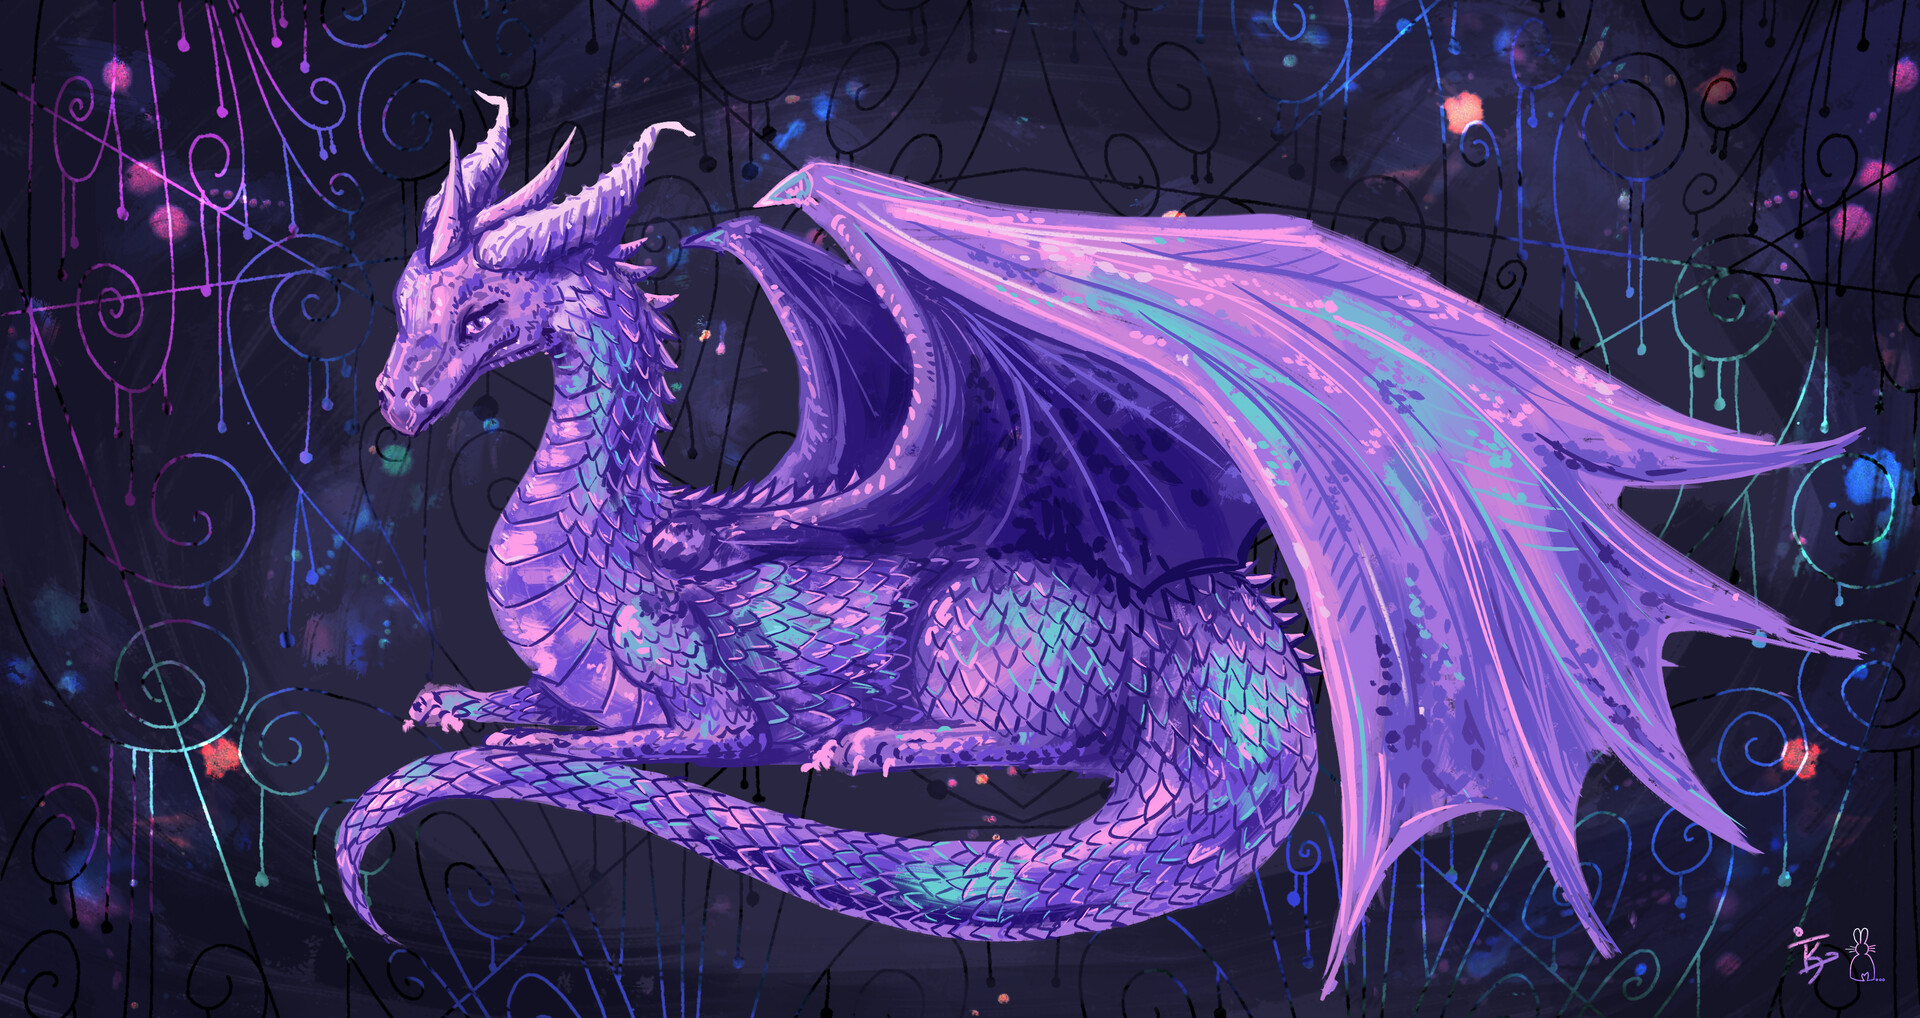 Rồng pha lê (Crystal dragon): Bạn đã bao giờ khám phá vẻ đẹp tuyệt vời của rồng pha lê chưa? Hình ảnh này sẽ cho bạn những trải nghiệm tuyệt với nhất về vẻ đẹp hoàn mỹ của loài rồng đầy bí ẩn này. Khám phá ngay hình ảnh để đắm chìm trong thế giới rực rỡ của rồng pha lê.